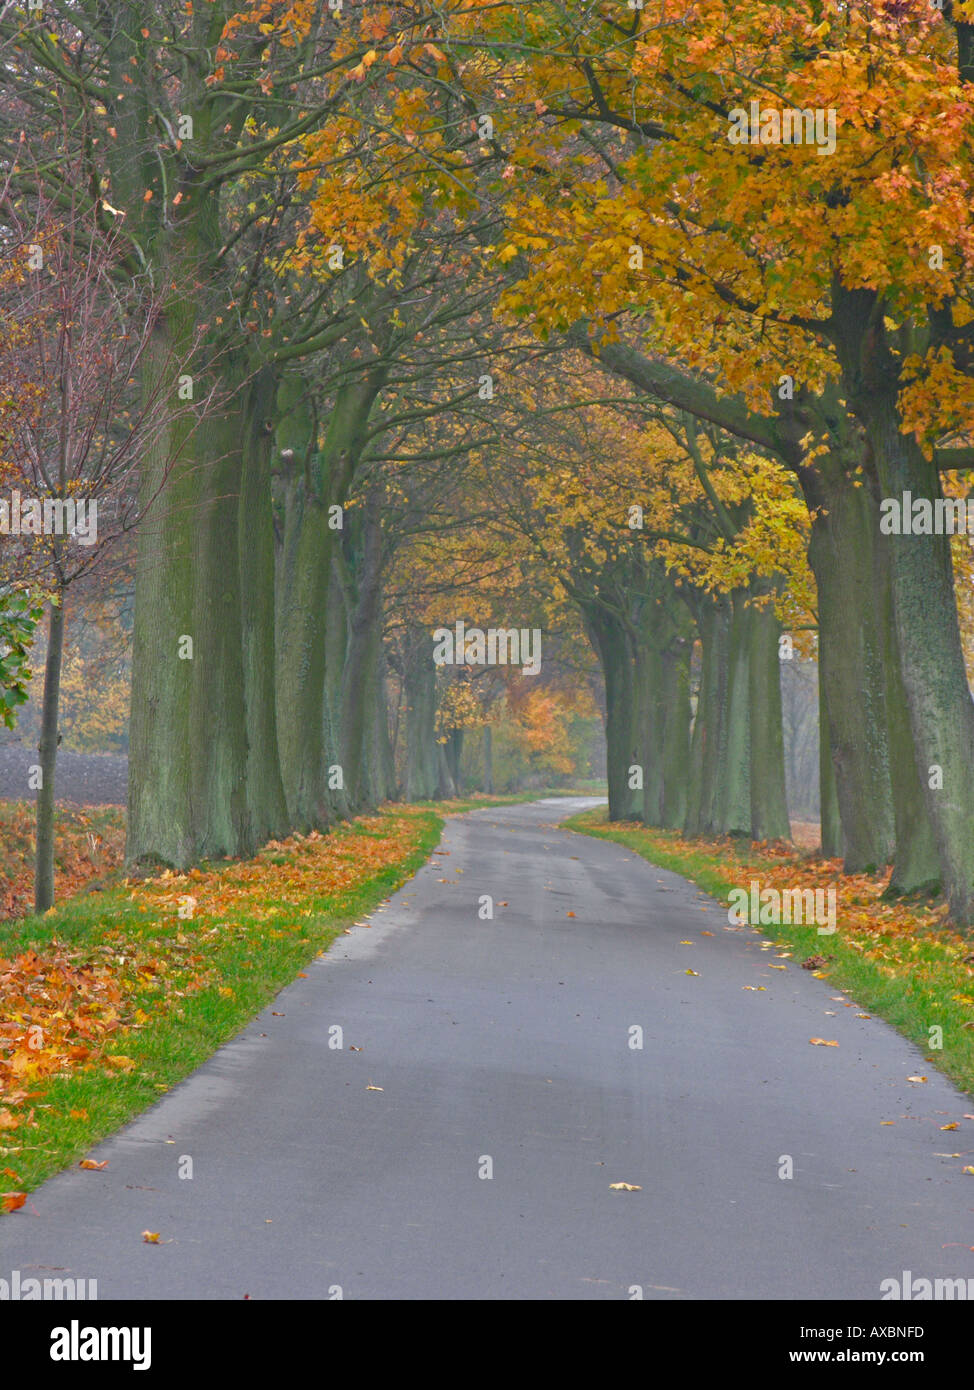 gerade leer Land Straße Avenue im Herbst mit Bäumen in farbige Blätter in Deutschland Region Mecklenburg Stockfoto